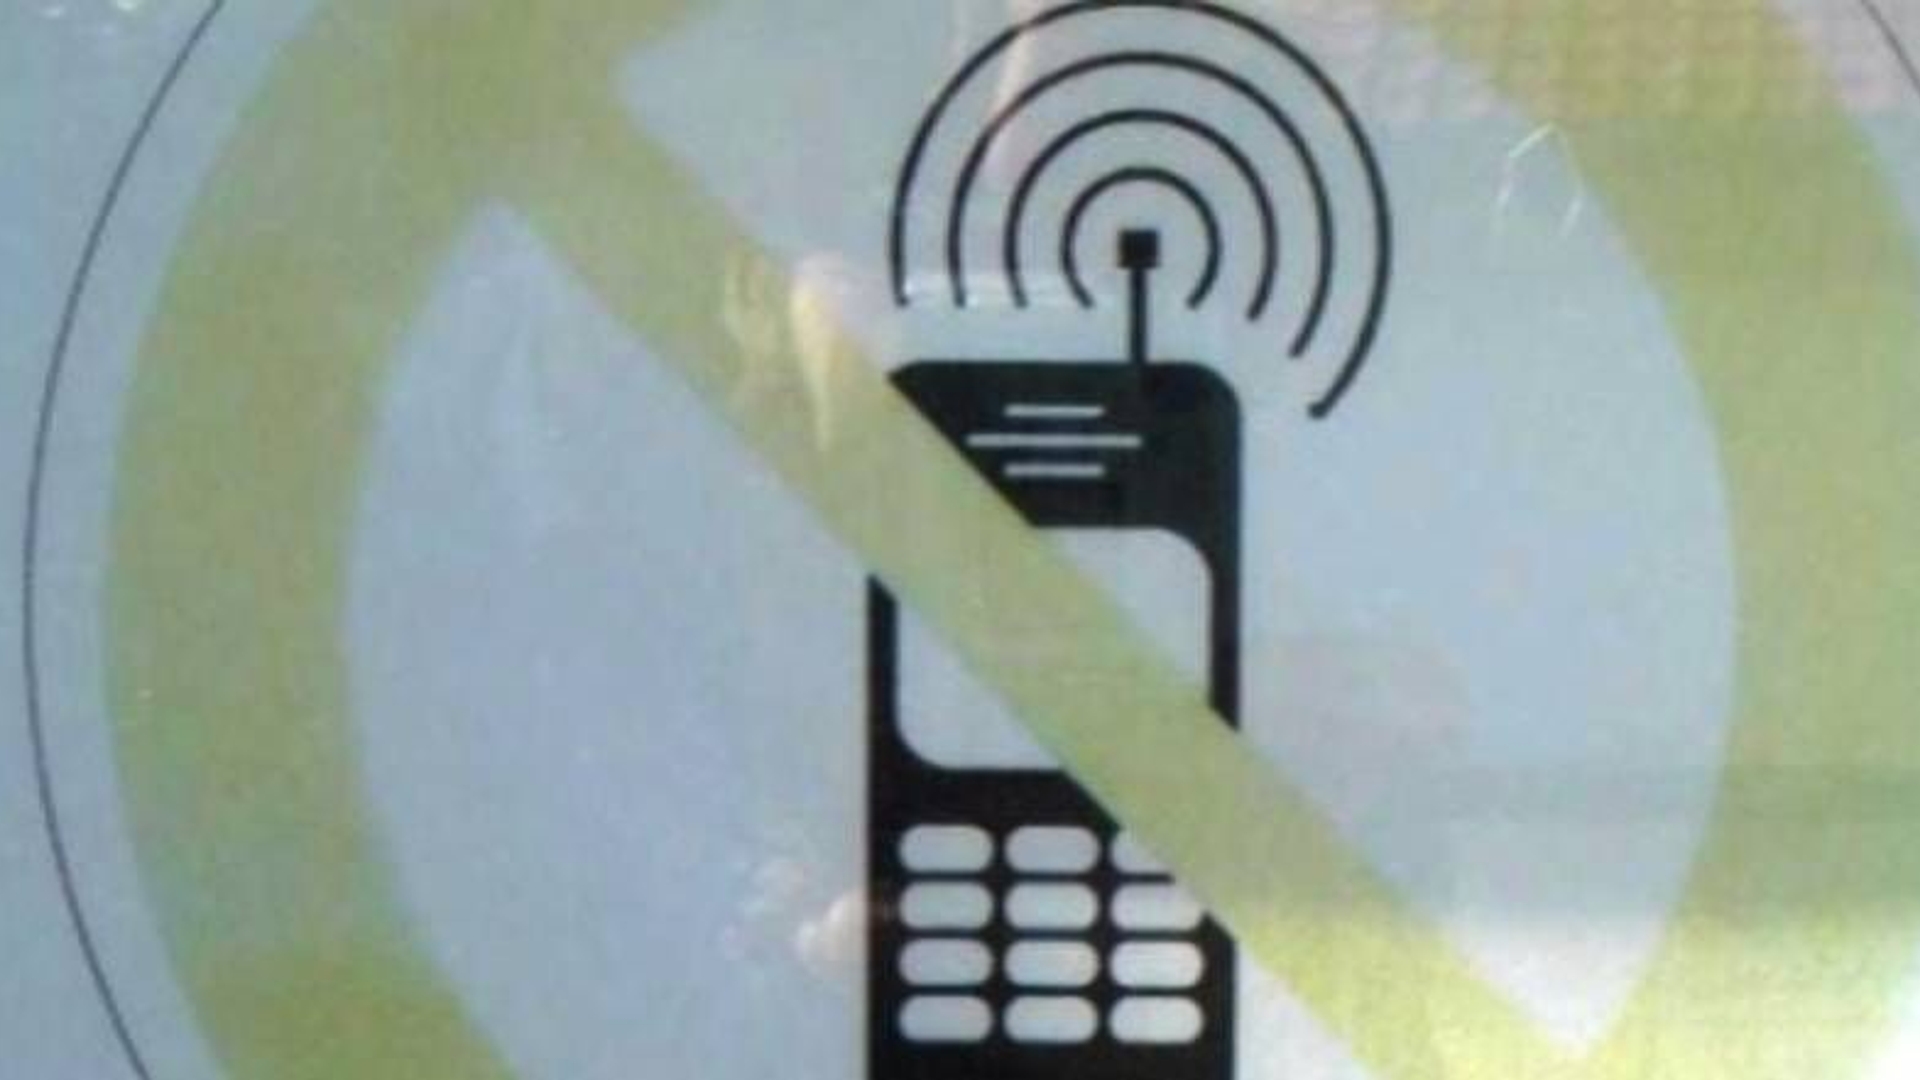 straling-mobiele-telefoon-riskant-voor-kinderen